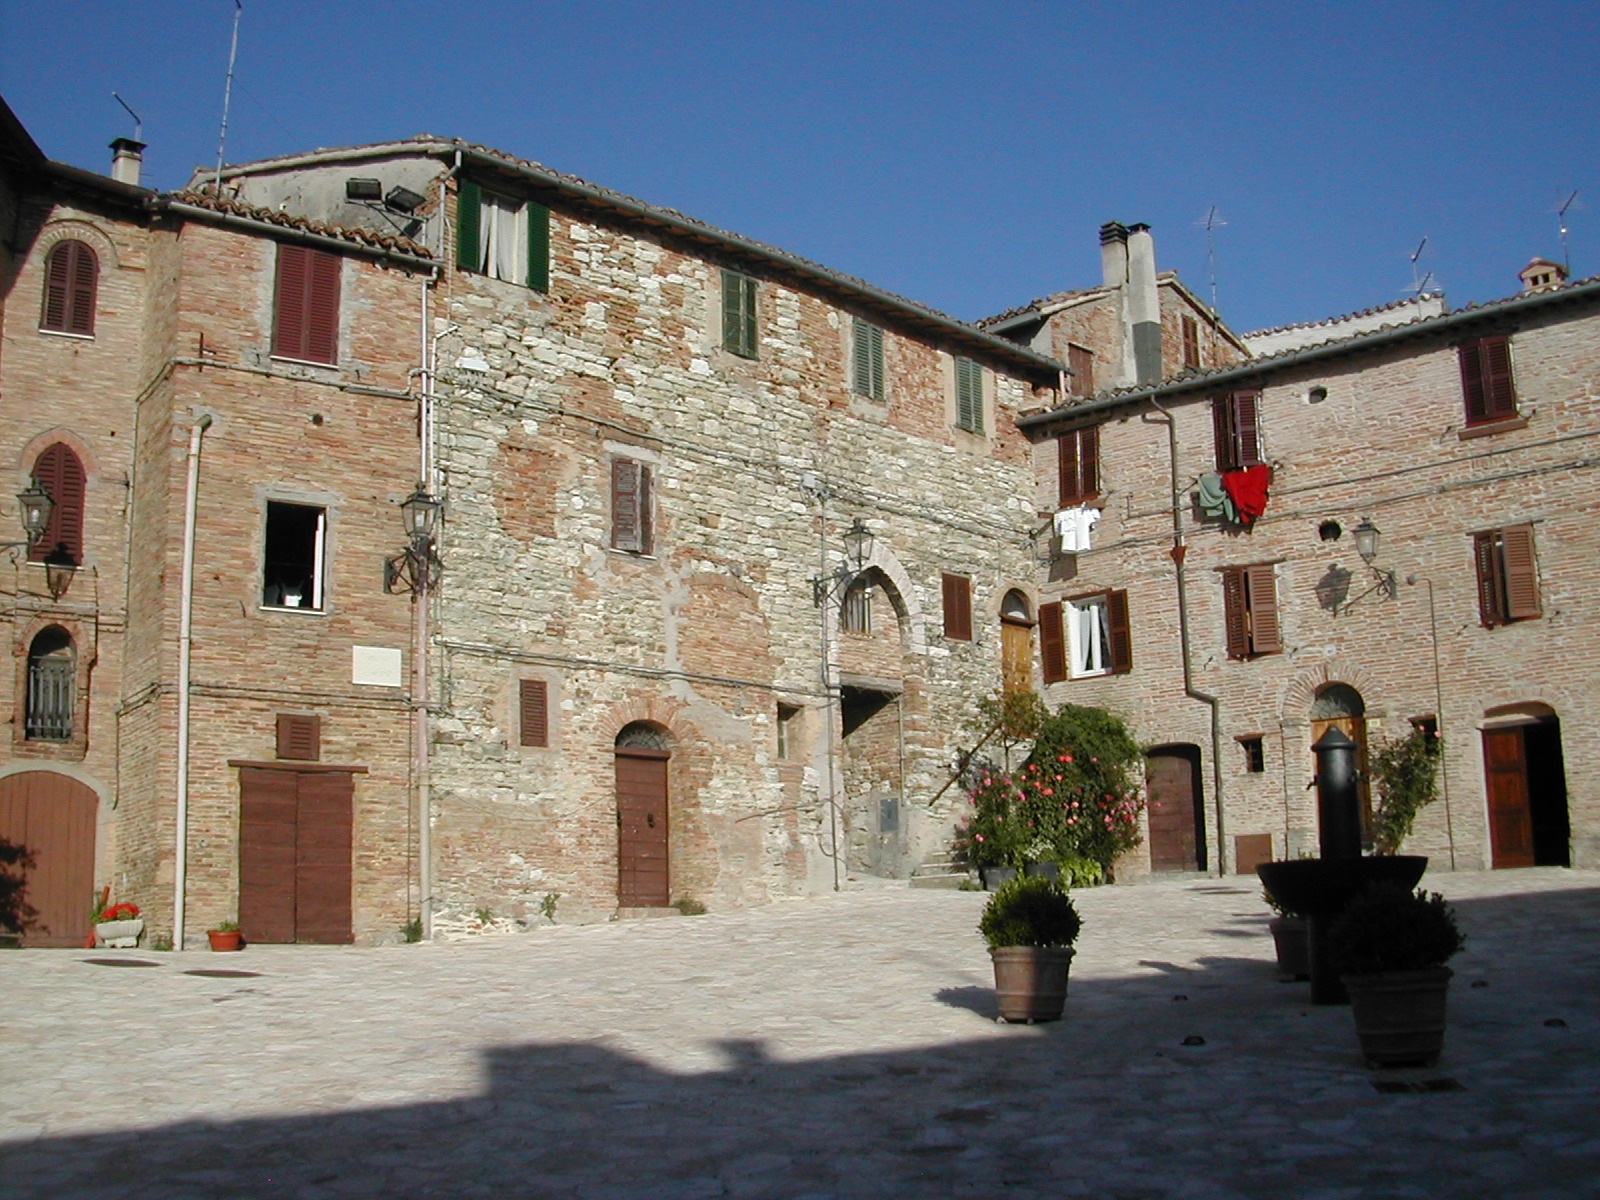 Casa a schiera sulle mura del Castello (casa a schiera) - Fabriano (AN) 